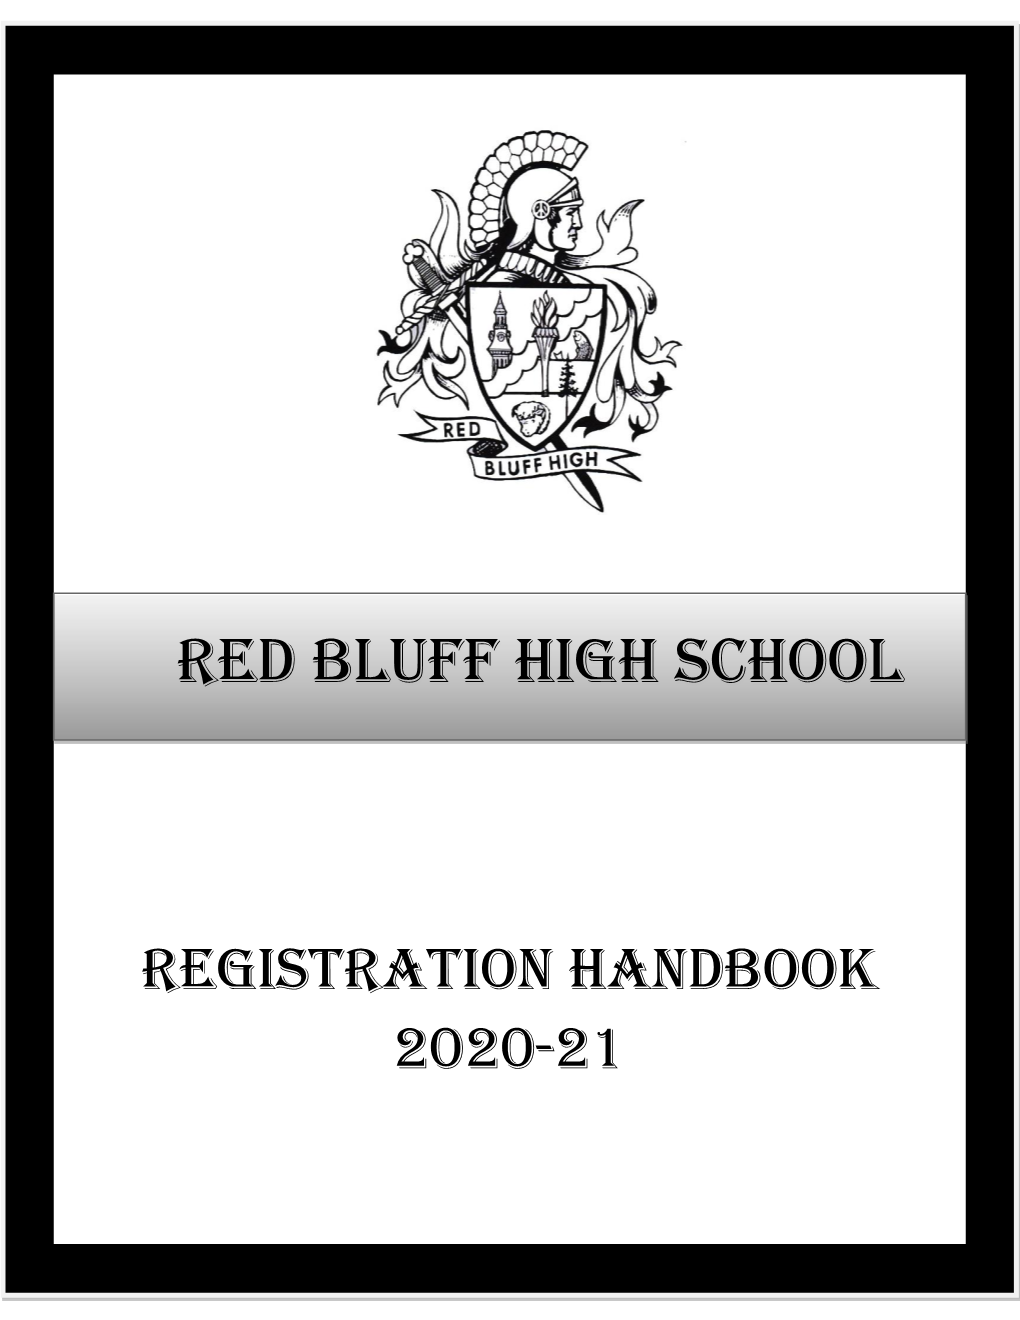 Registration Handbook